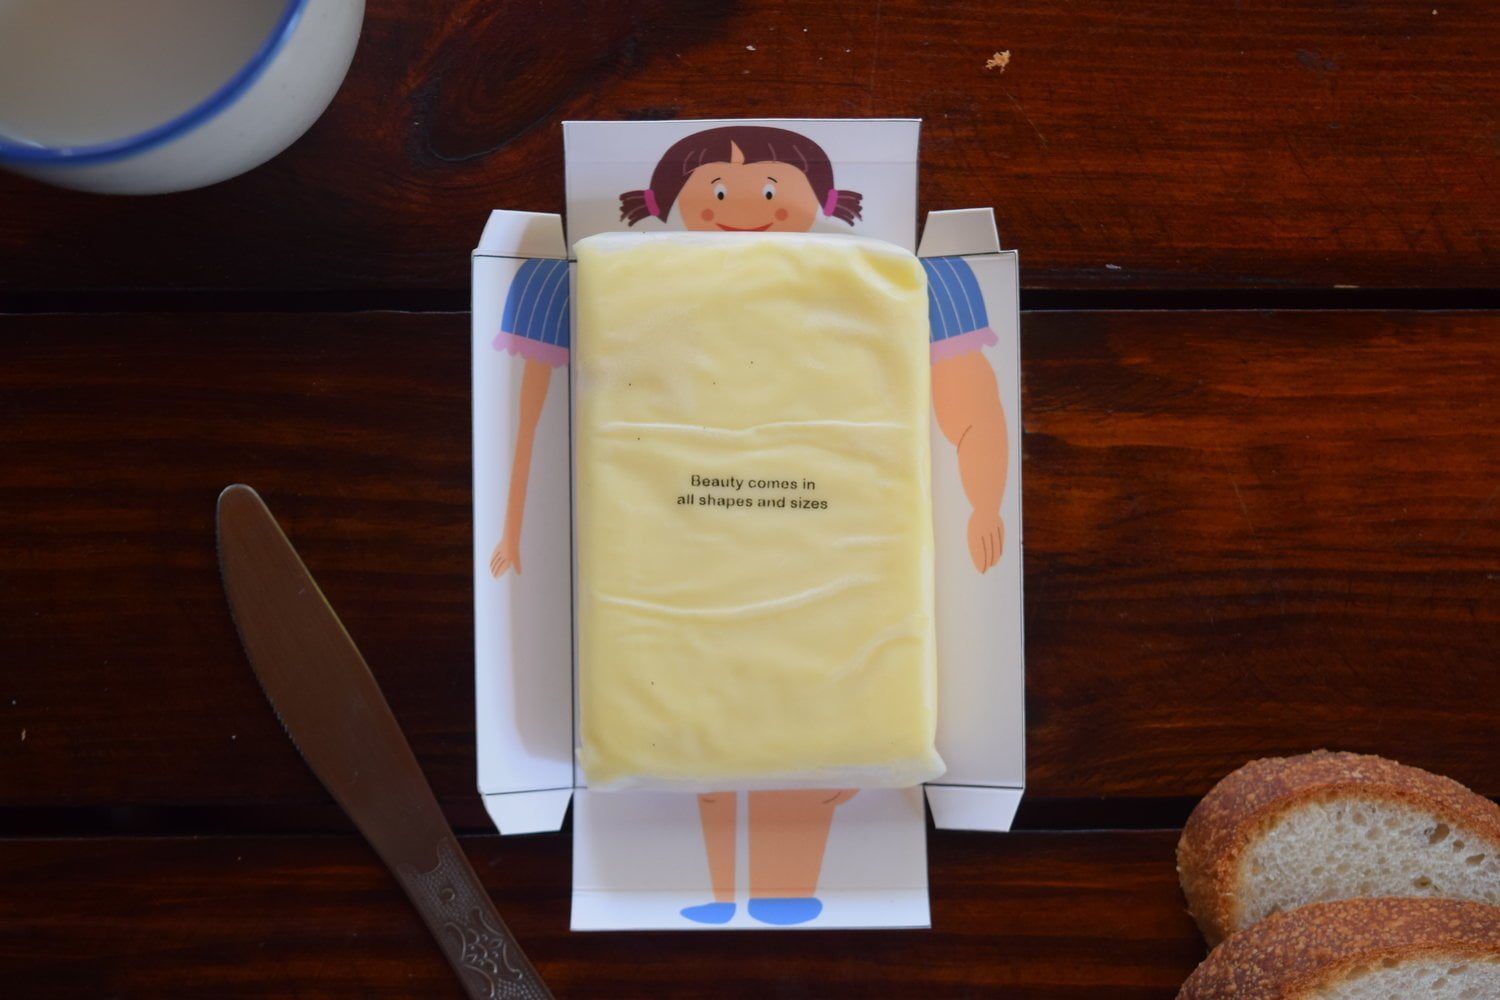 Butter Packaging